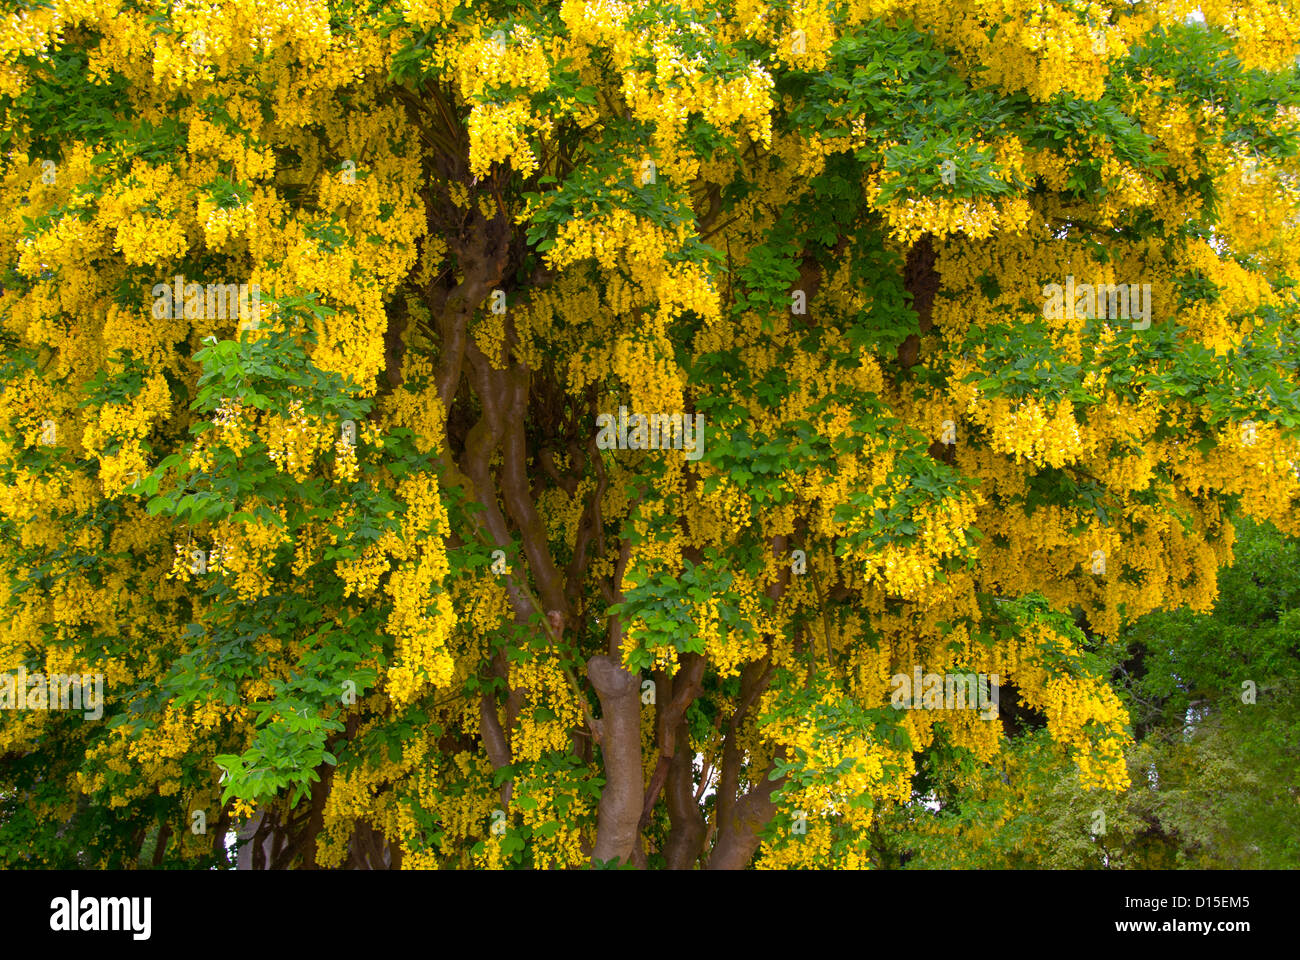 Chile, Magallanes und Antarktis Chilena Region, Punta Arenas, Baum mit gelben Blüten Stockfoto